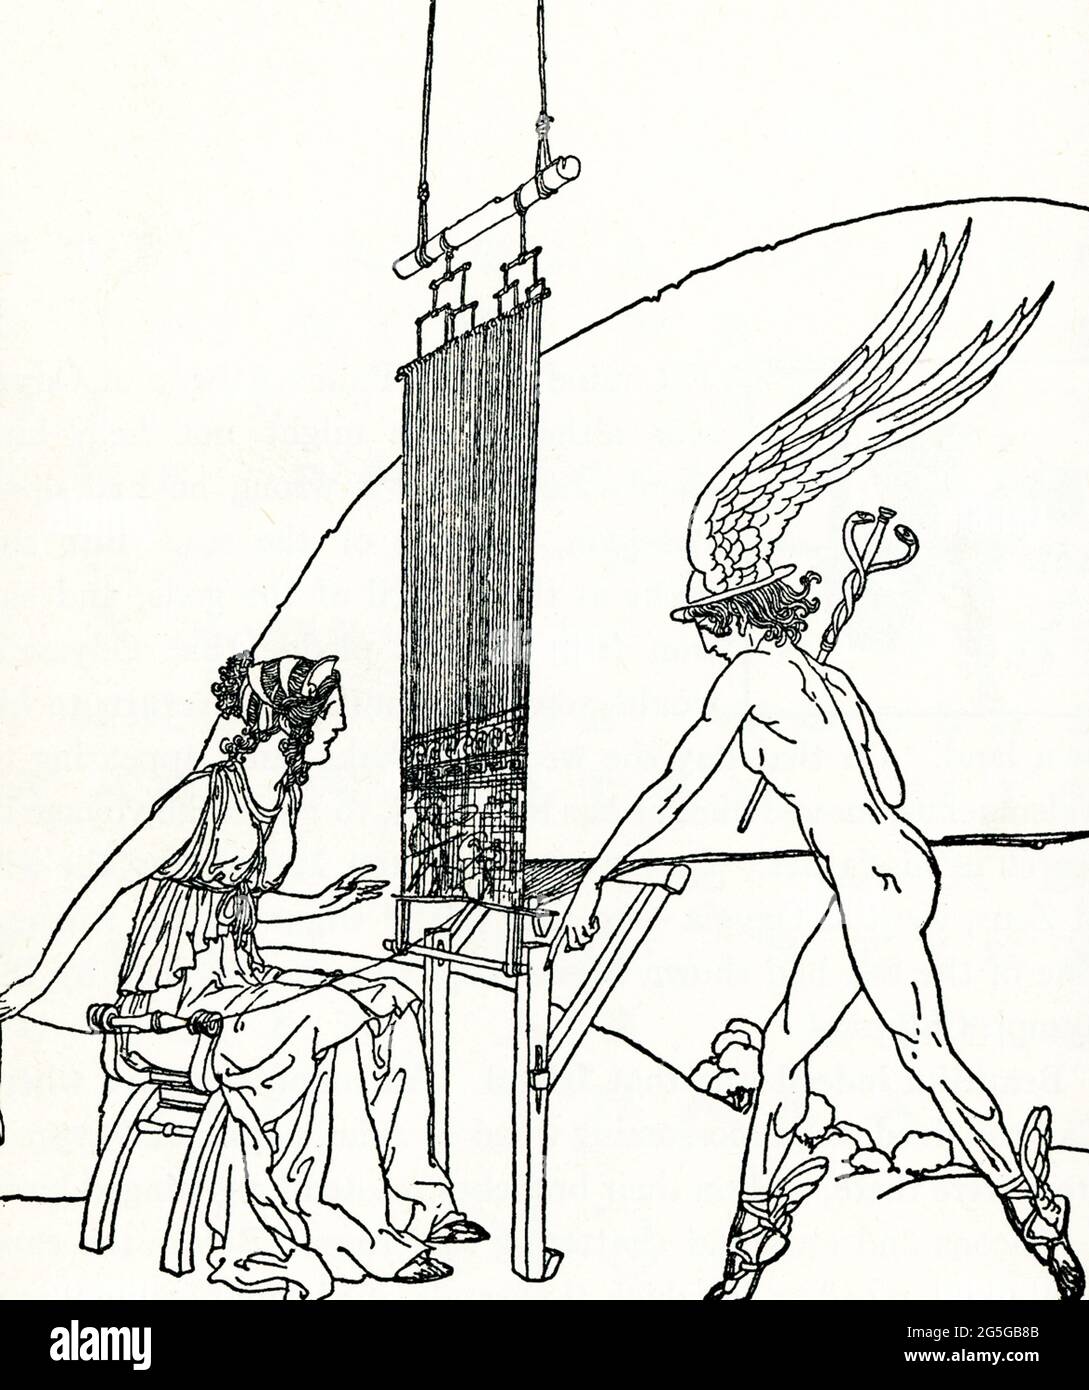 La légende de 1918 se lit comme suit : « Hermes visite Calypso dans sa grotte et dit que Zeus veut qu'elle laisse Odysseus partir ». Dans la mythologie grecque, Calypso est la fille de l'Atlas Titan (également connu sous le nom d'Oceanus et Nereus). Elle est une nymphe de l'île mythique d'Ogygia. Dans l'Odyssée d'Homer, Livre V (également Livres I et VII), elle a accueilli le héros grec Odysseus pendant sept ans, mais elle ne pouvait pas surmonter son désir de se rendre à la maison même en lui promettant l'immortalité. Ici, le dieu Hermes livre à Calypso le message de Zeus qu'elle doit laisser Odysseus revenir à Ithaca. Elle obéit. Banque D'Images